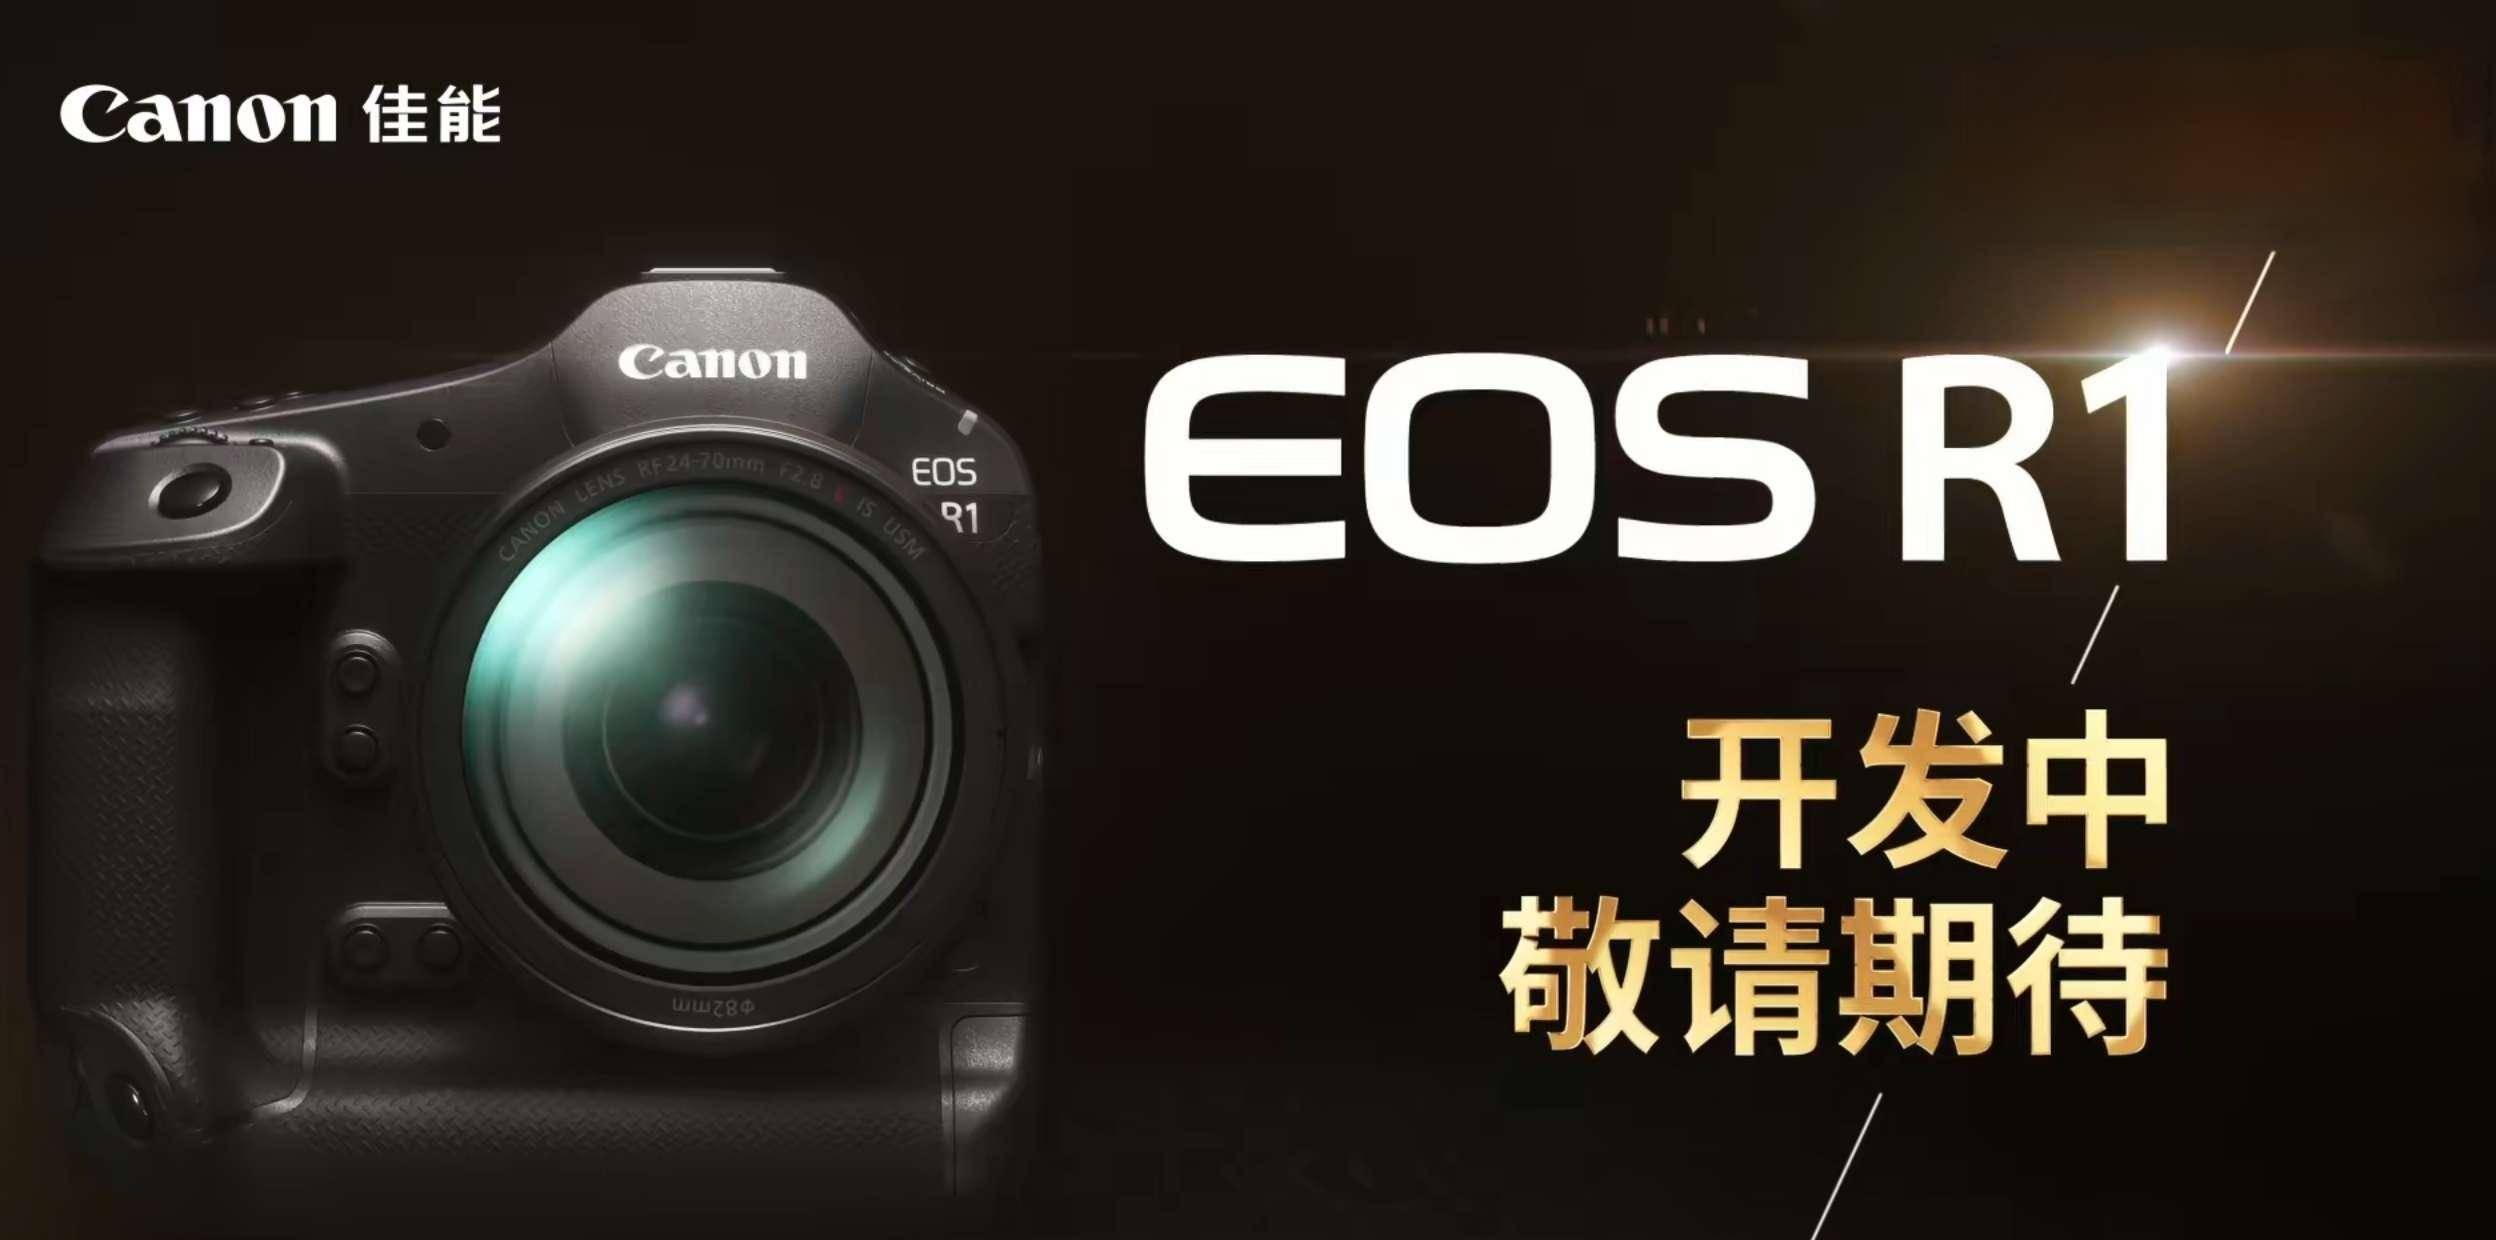 佳能官宣开发 EOS R 系统首款全画幅专微旗舰相机 EOS R1